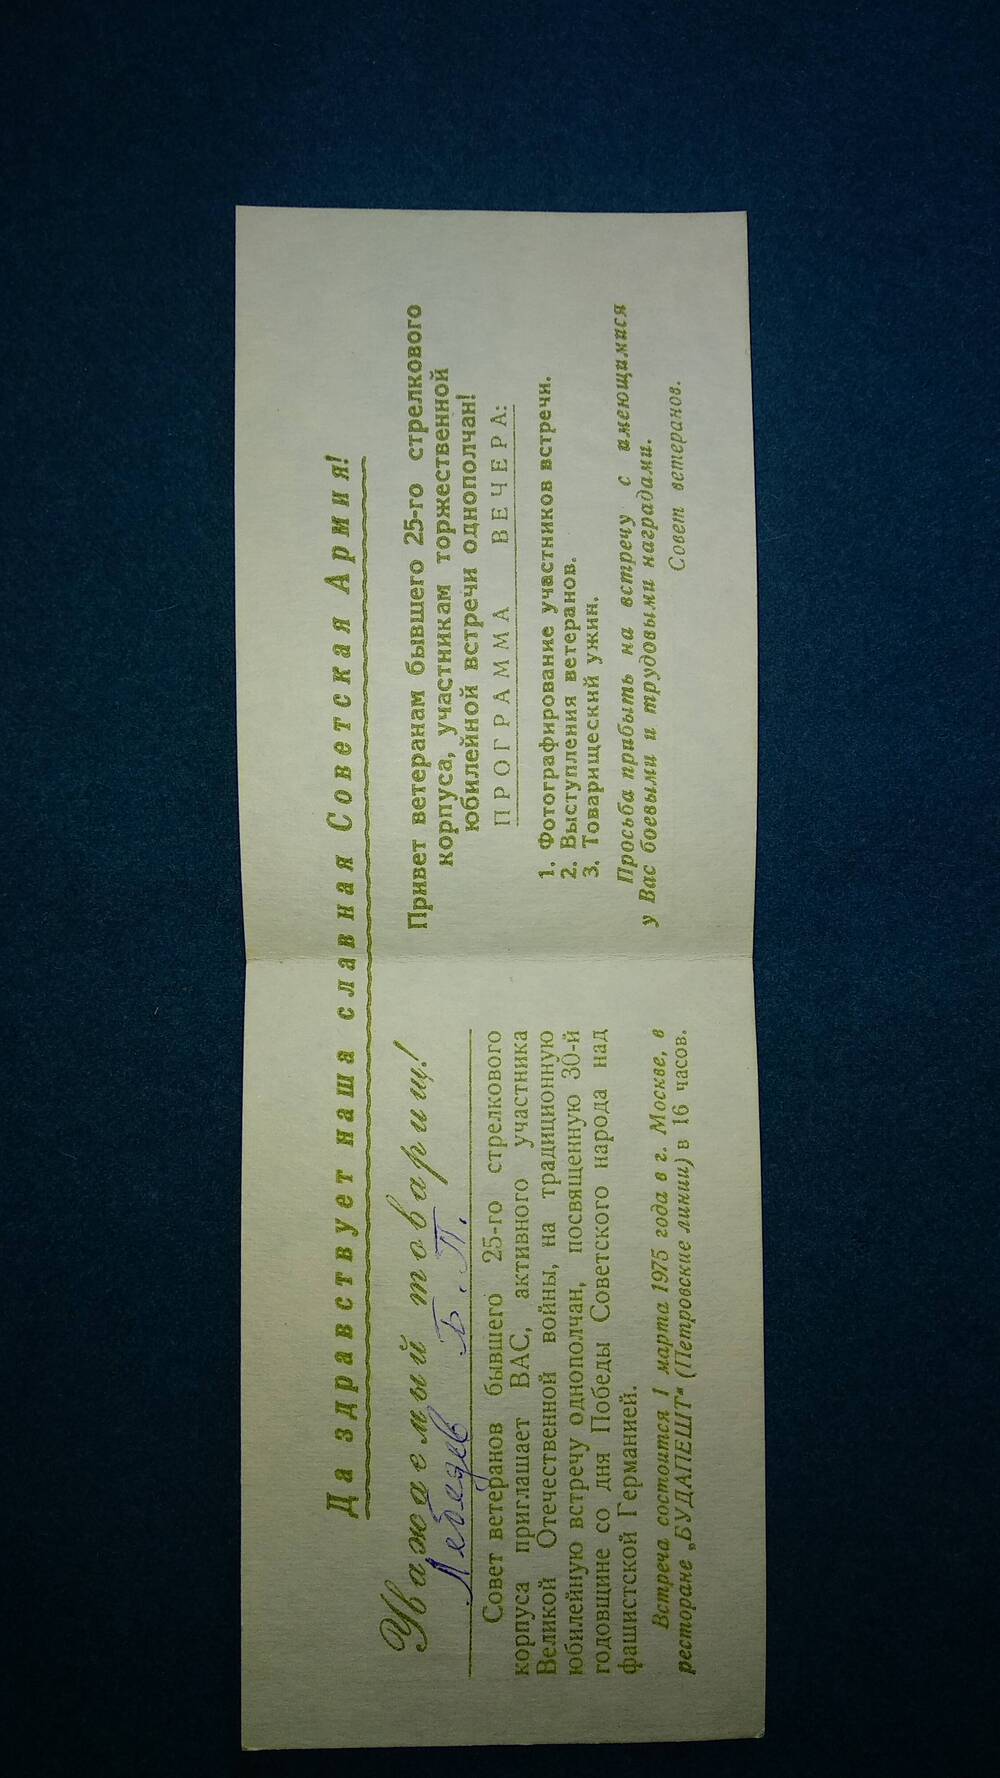 Билет пригласительный Лебедева Б. П. на юбилейную встречу ветеранов 25-го стрелкового корпуса, посвященную 30-й годовщине победы в Великой Отечественной войне 1941-1945гг.